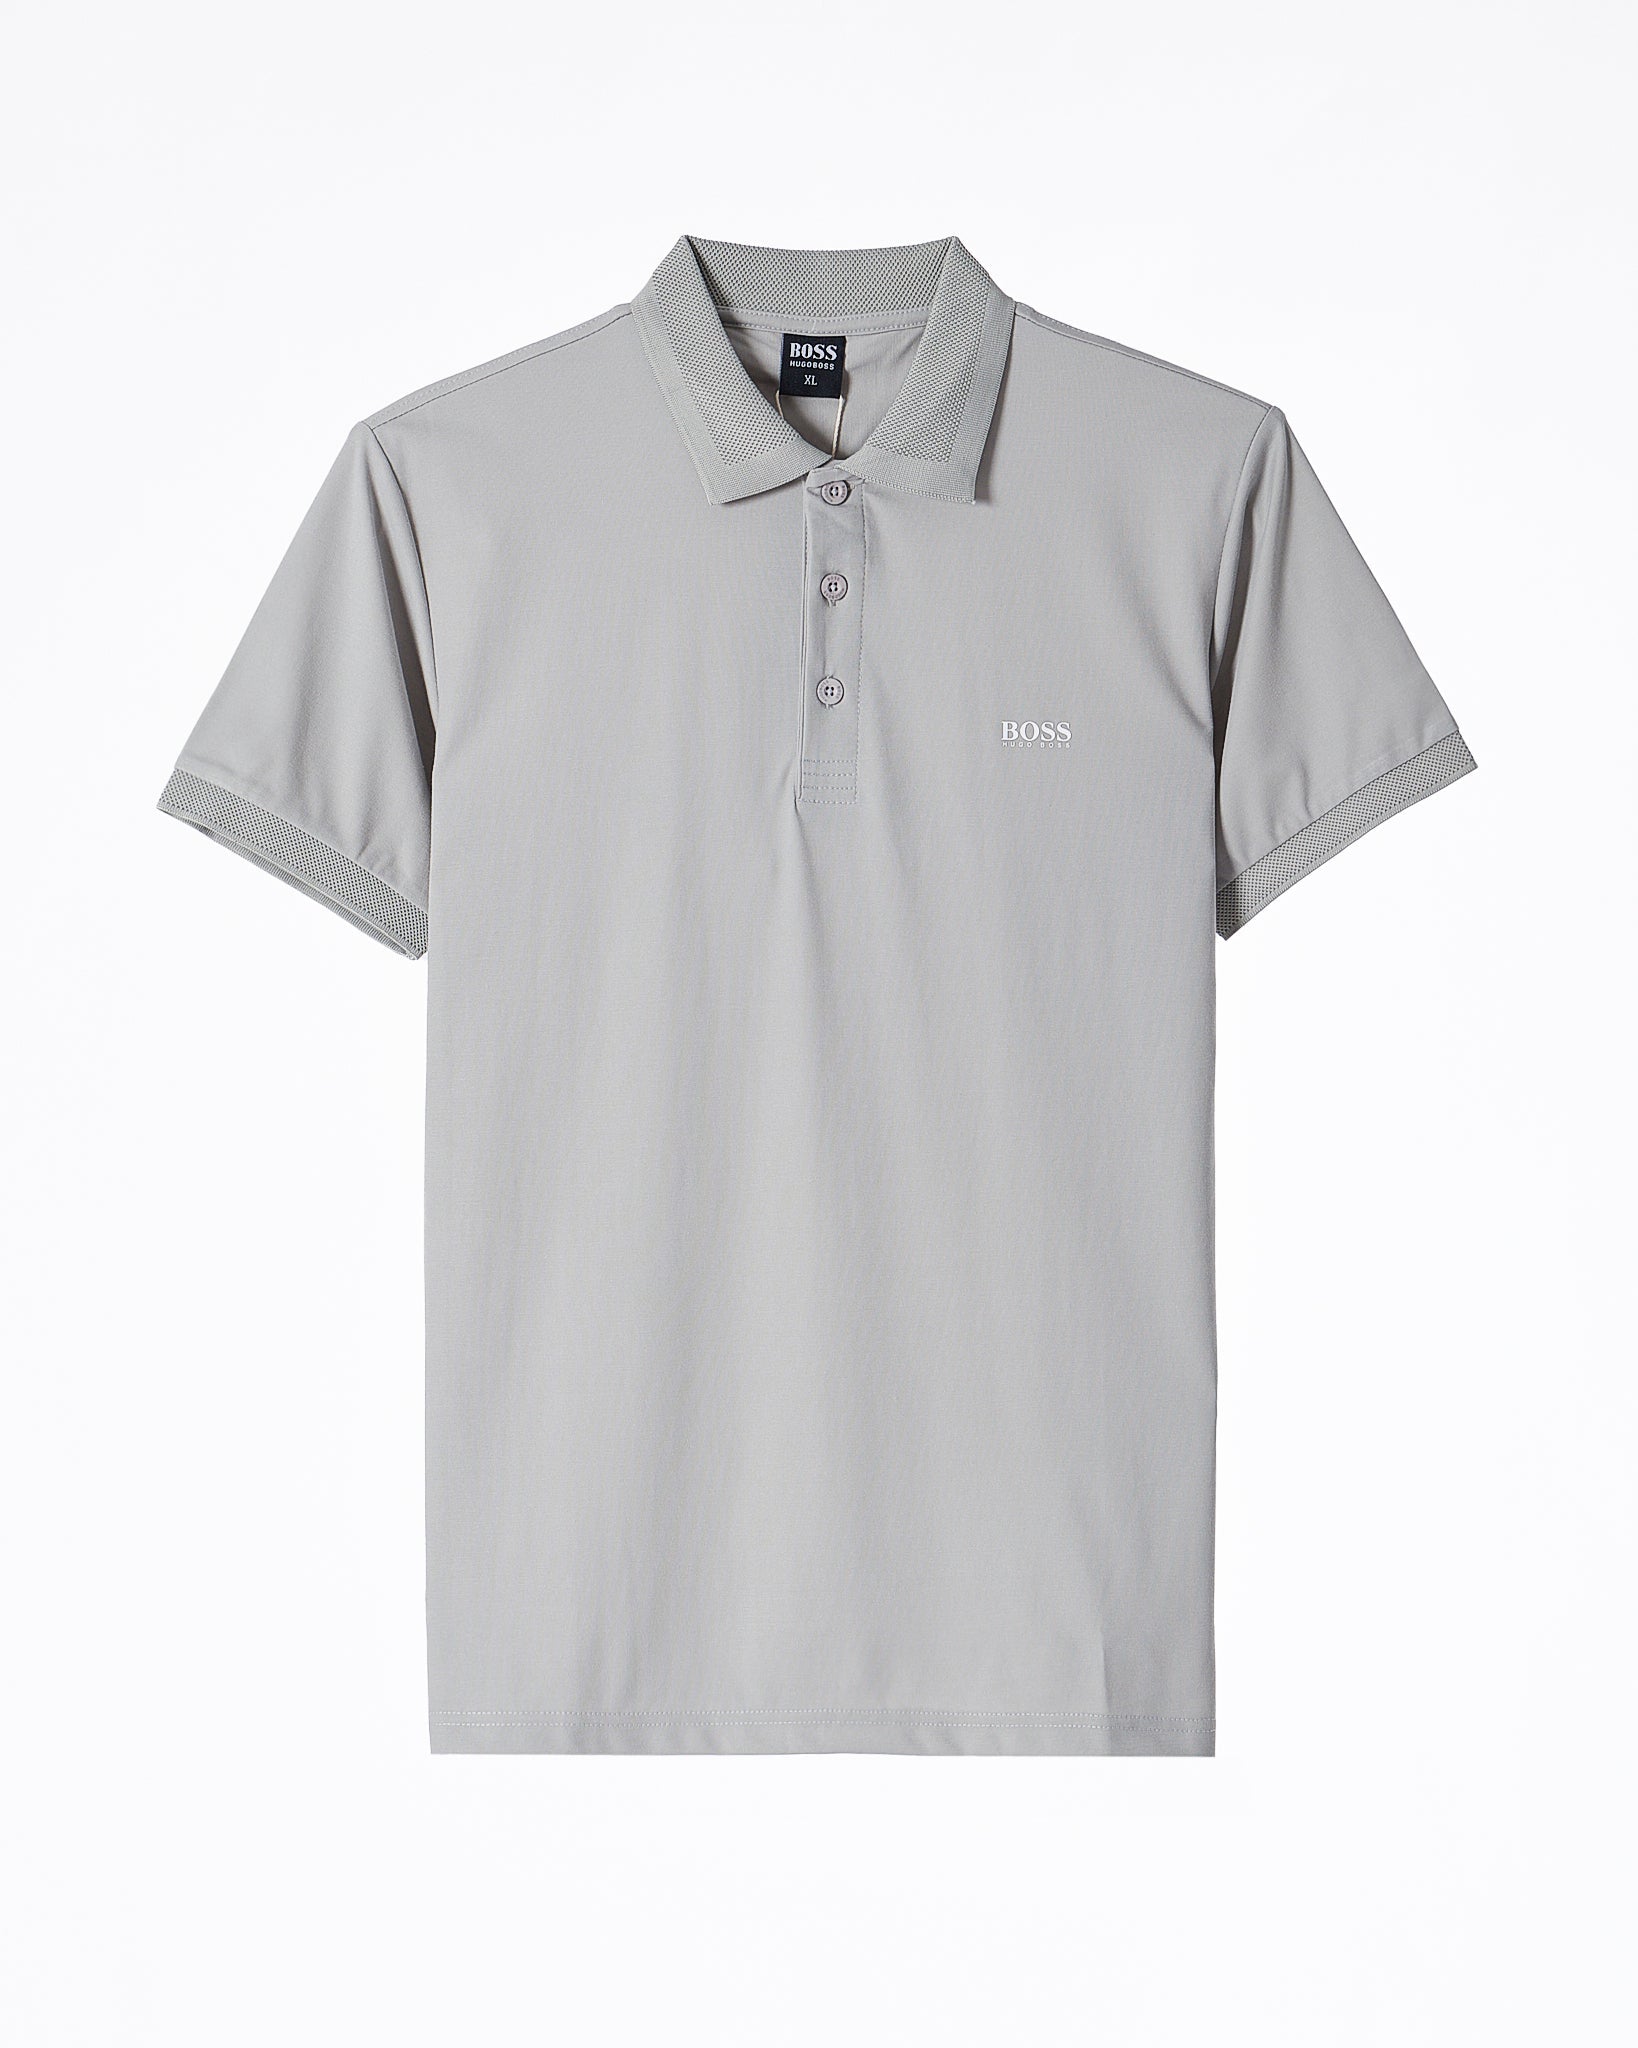 MOI OUTFIT-Boss Men Grey Polo Shirt 22.90